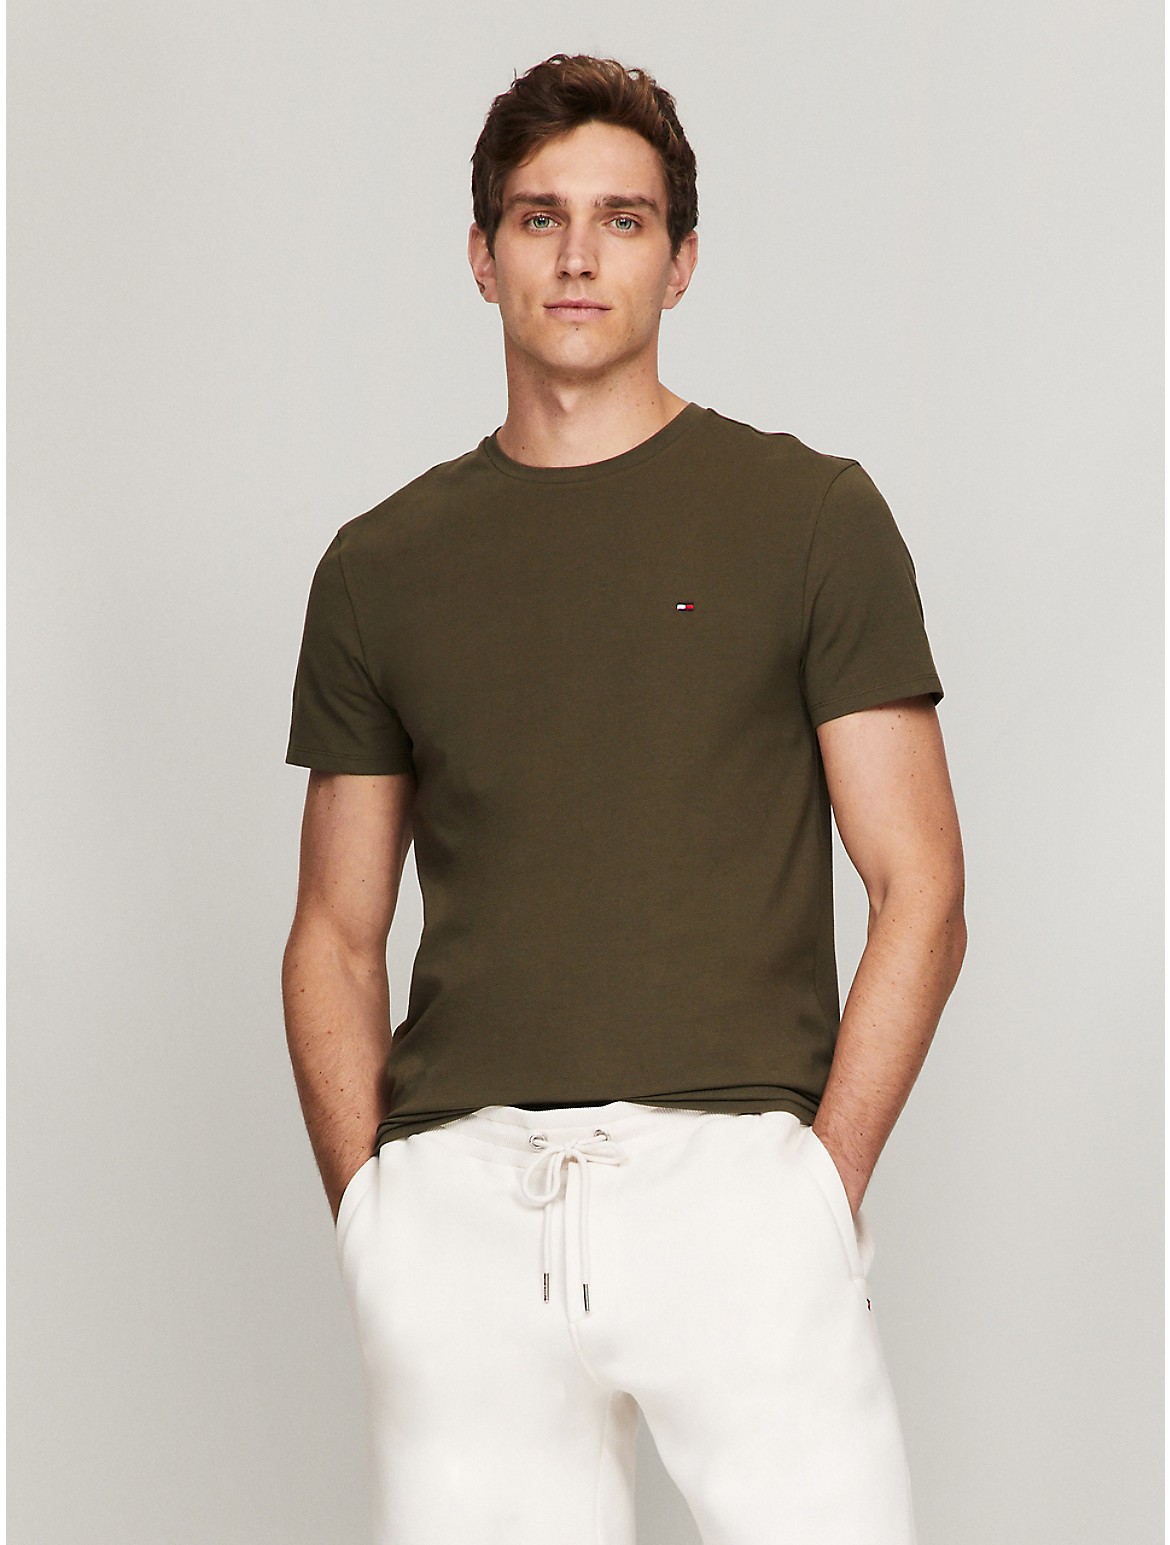 Tommy Hilfiger Men's Slim Fit Solid T-Shirt